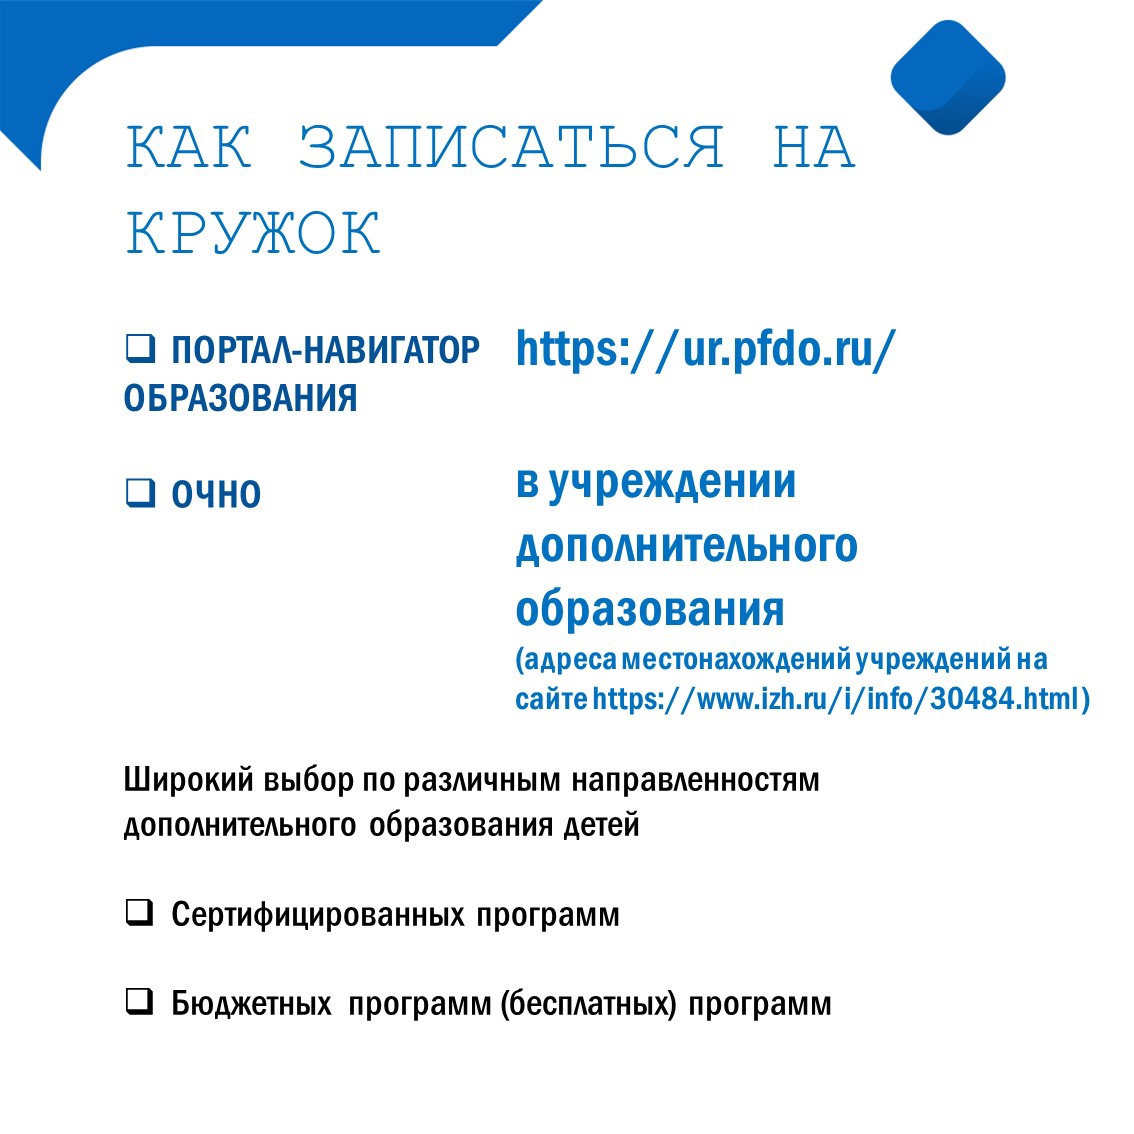 Как оформить сертификат ПФДО на ребенка в Ижевске?